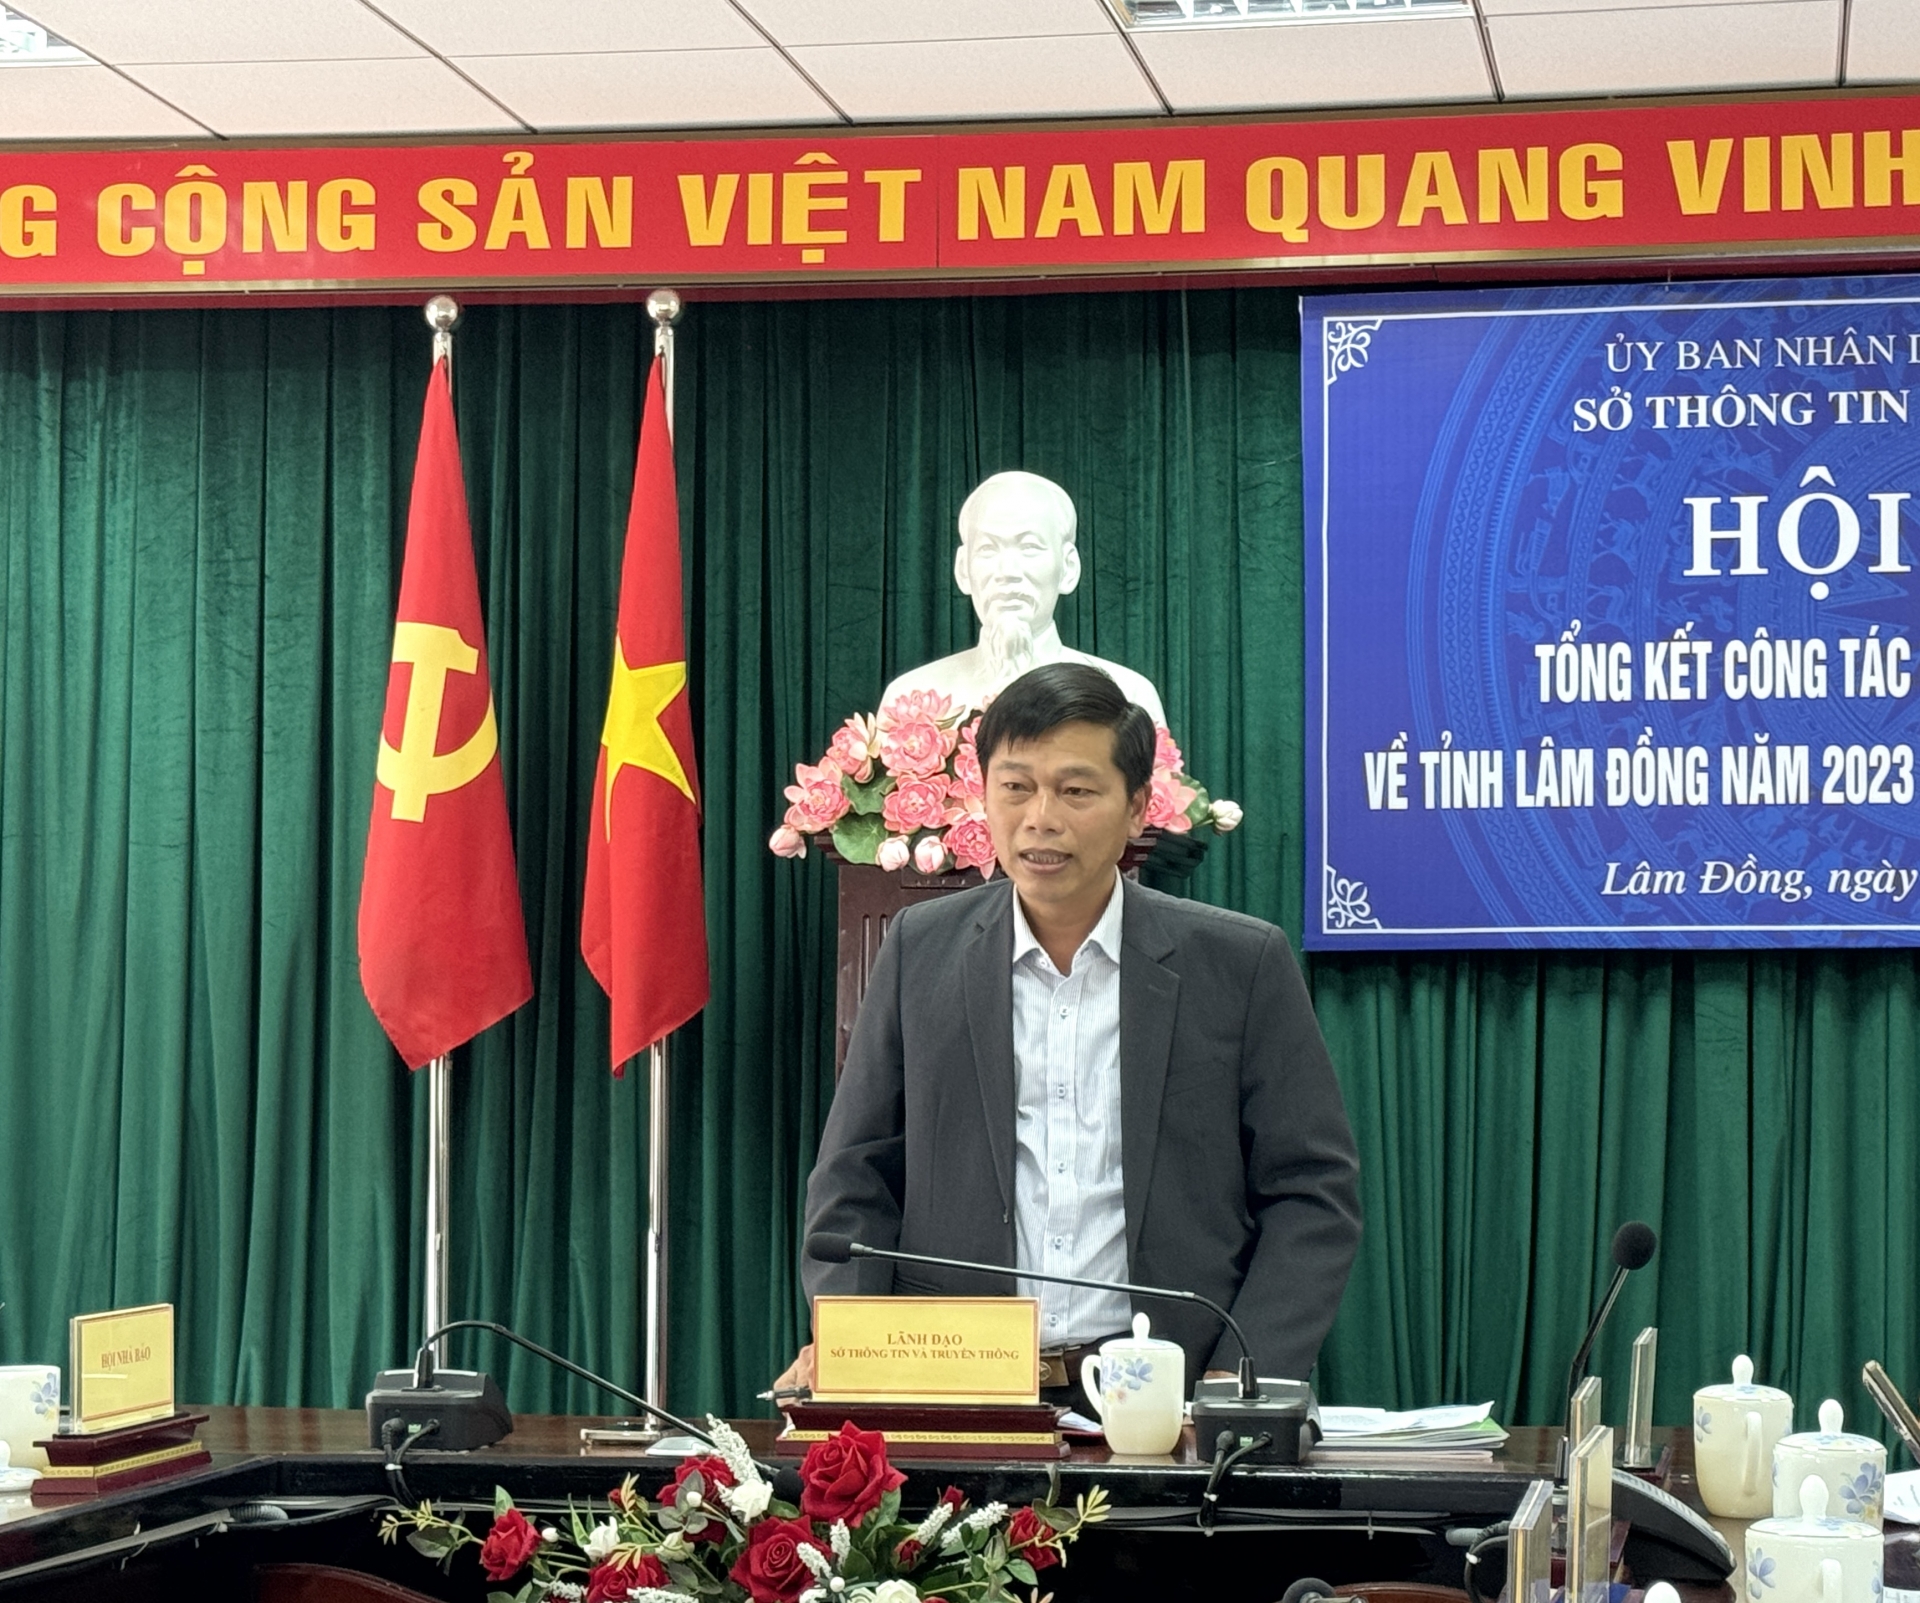 Ông Huỳnh Minh Hải- Giám đốc sở Thôn tin và truyền thông tỉnh Lâm Đồng phát biểu tại hội nghị